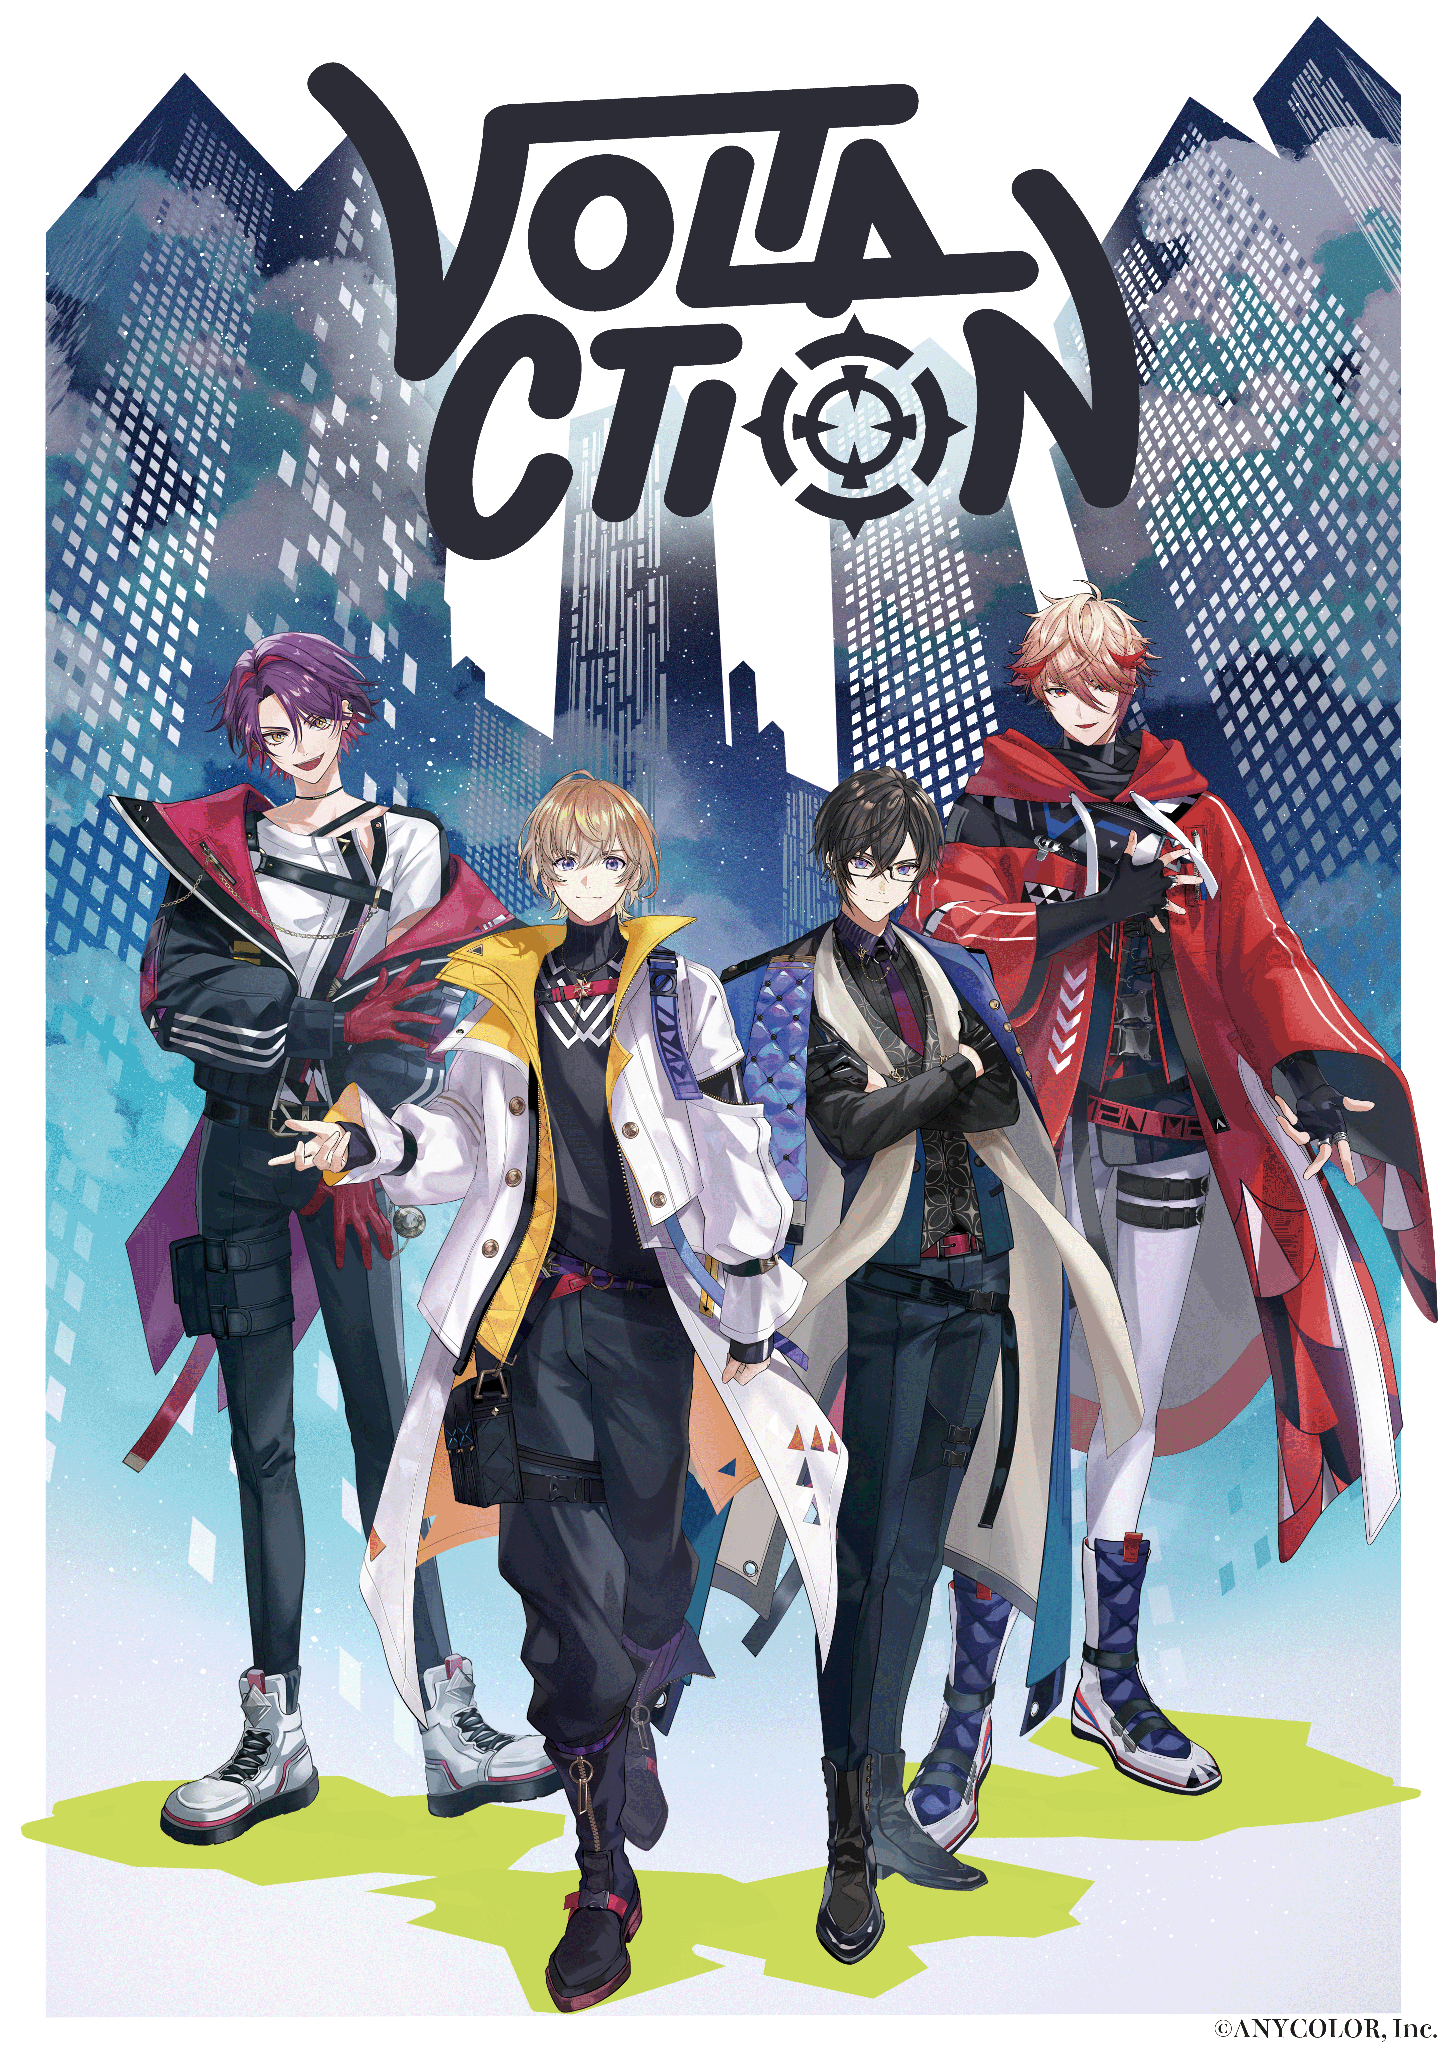 「VOLTACTION 2nd Anniversary」グッズを2024年7月13日(土)18時から販売開始！